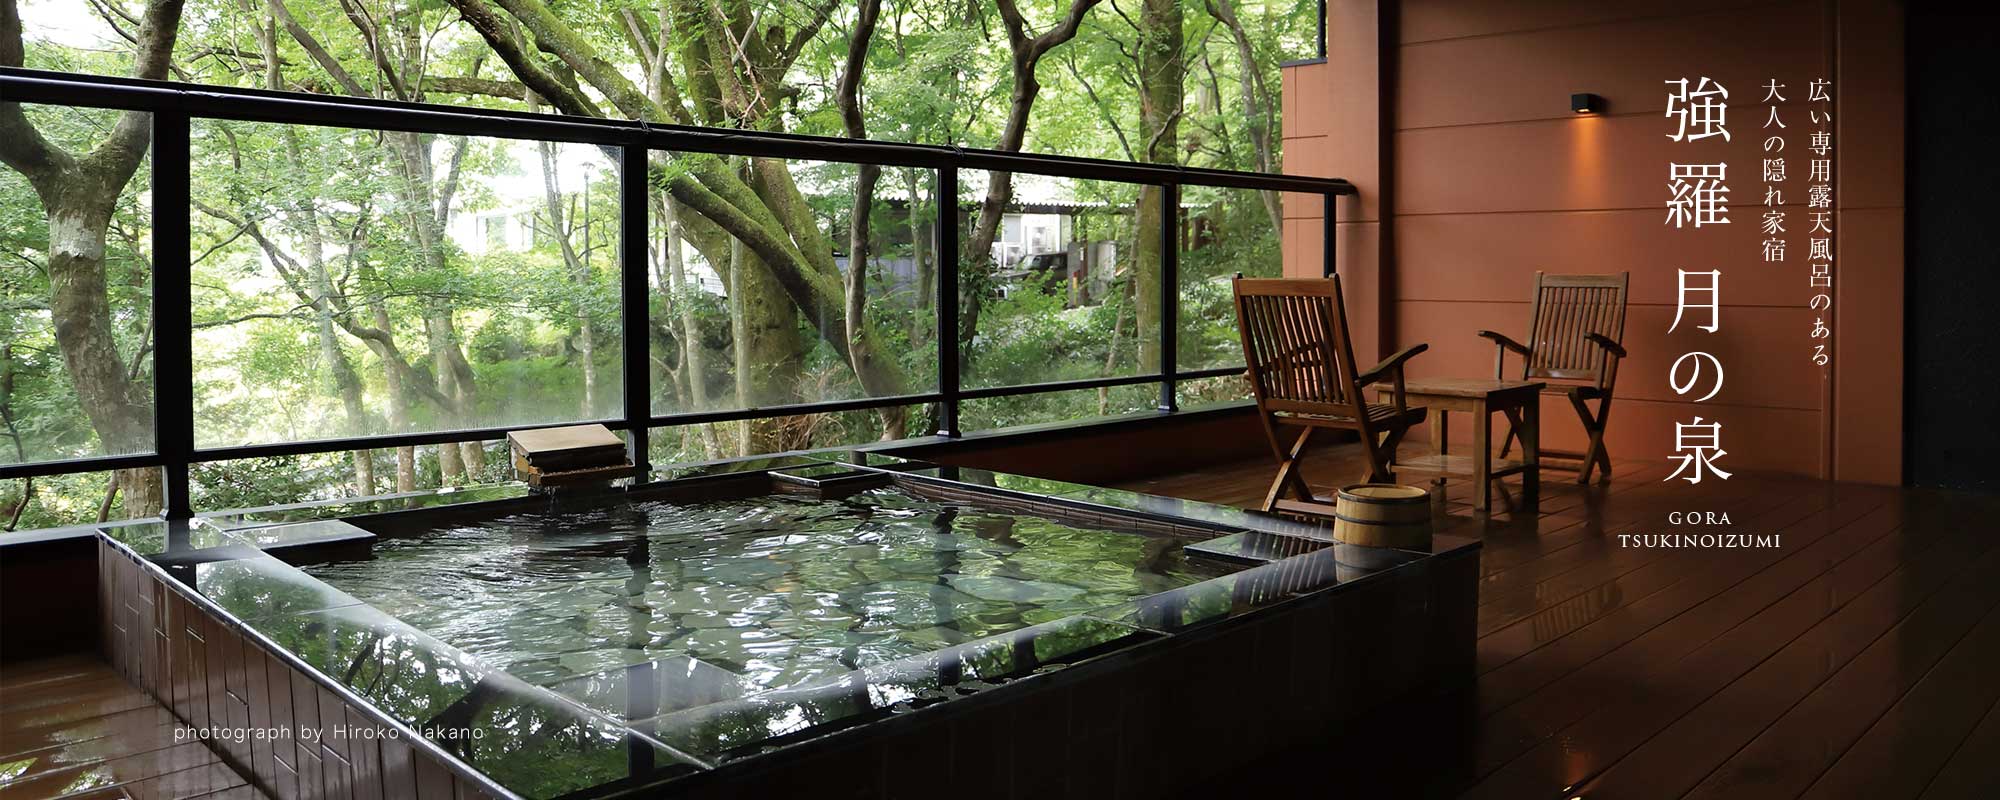 強羅 月の泉 - GORA TSUKINOIZUMI / 広い専用露天風呂のある大人の隠れ家宿